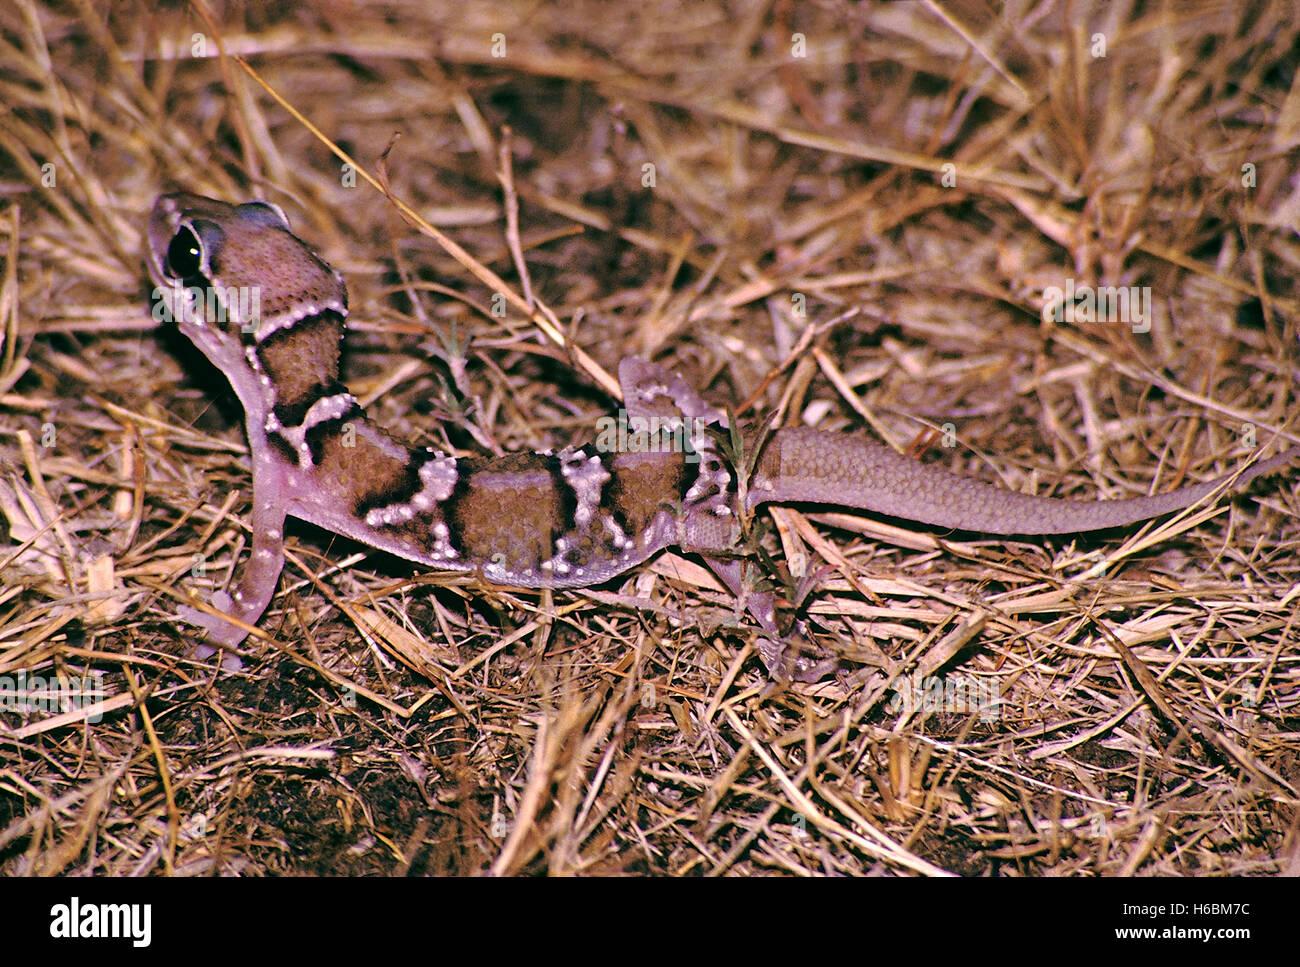 Termite Hill gecko, hemidactylus triedrus. Bunte Gecko in offenen Bereichen gefunden. ernährt sich von Termiten Stockfoto